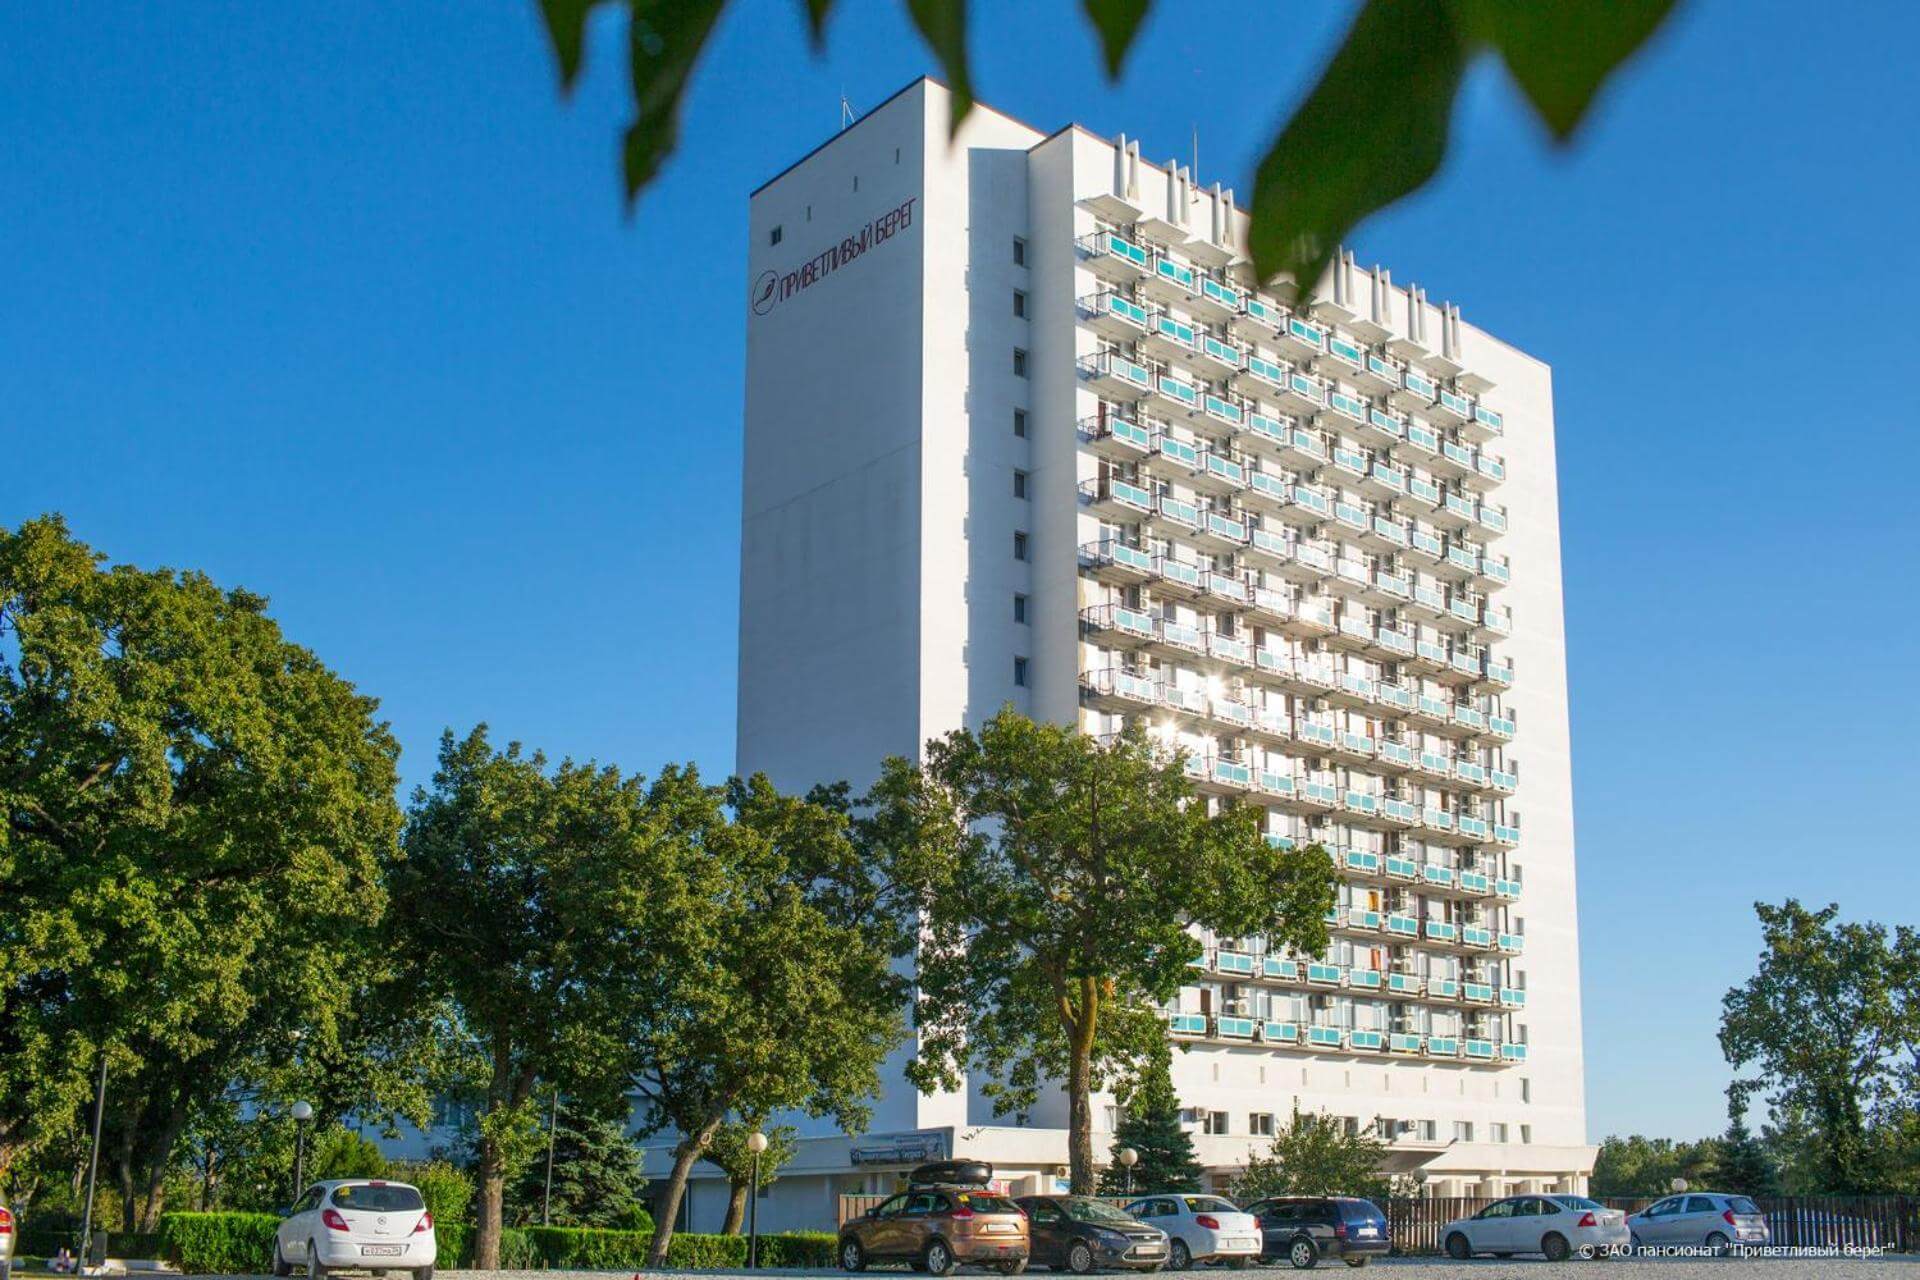 Здание отеля - пример советской архитектуры.